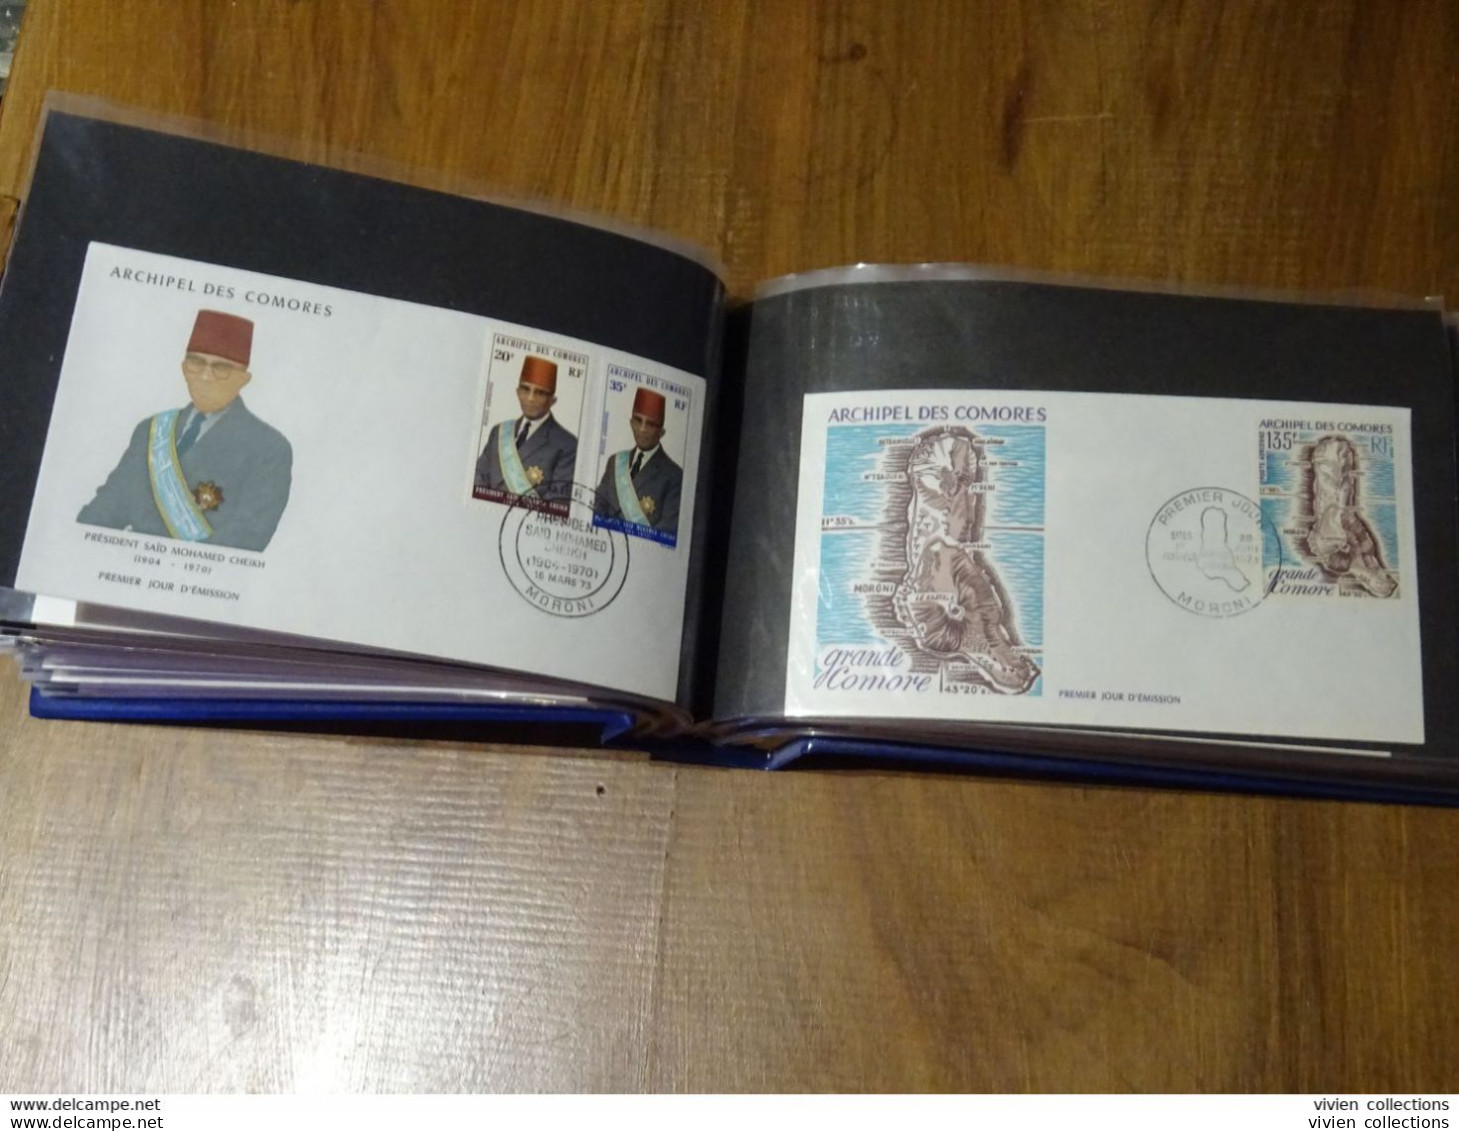 Comores Polynésie Française album lettres principalement 1er jours dont intéressantes et quelques timbres divers en vrac